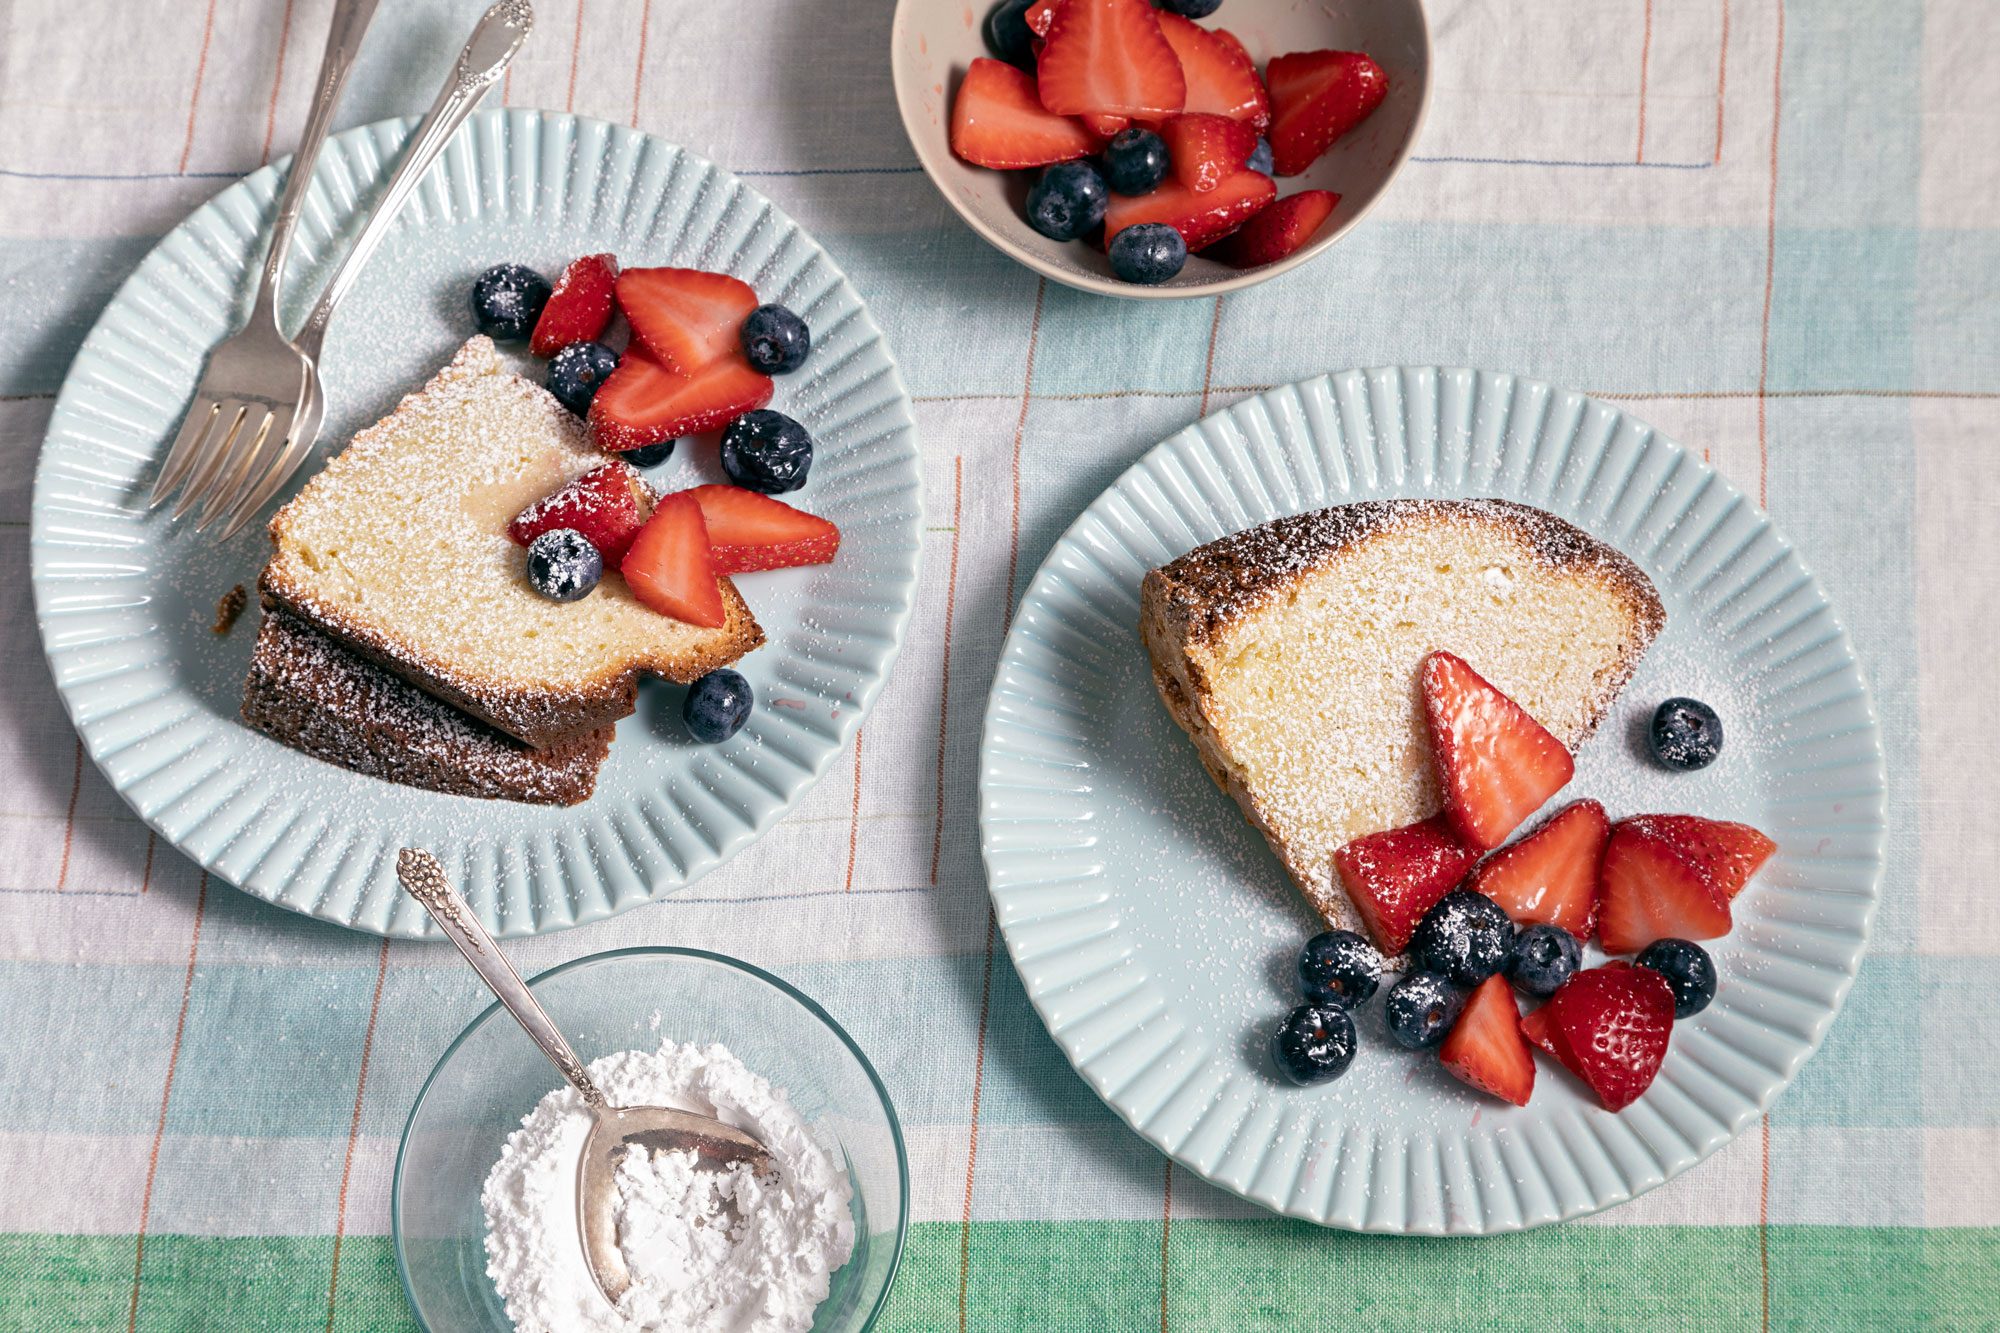 Berry-topped Sour Cream Pound Cake on elegant white plates